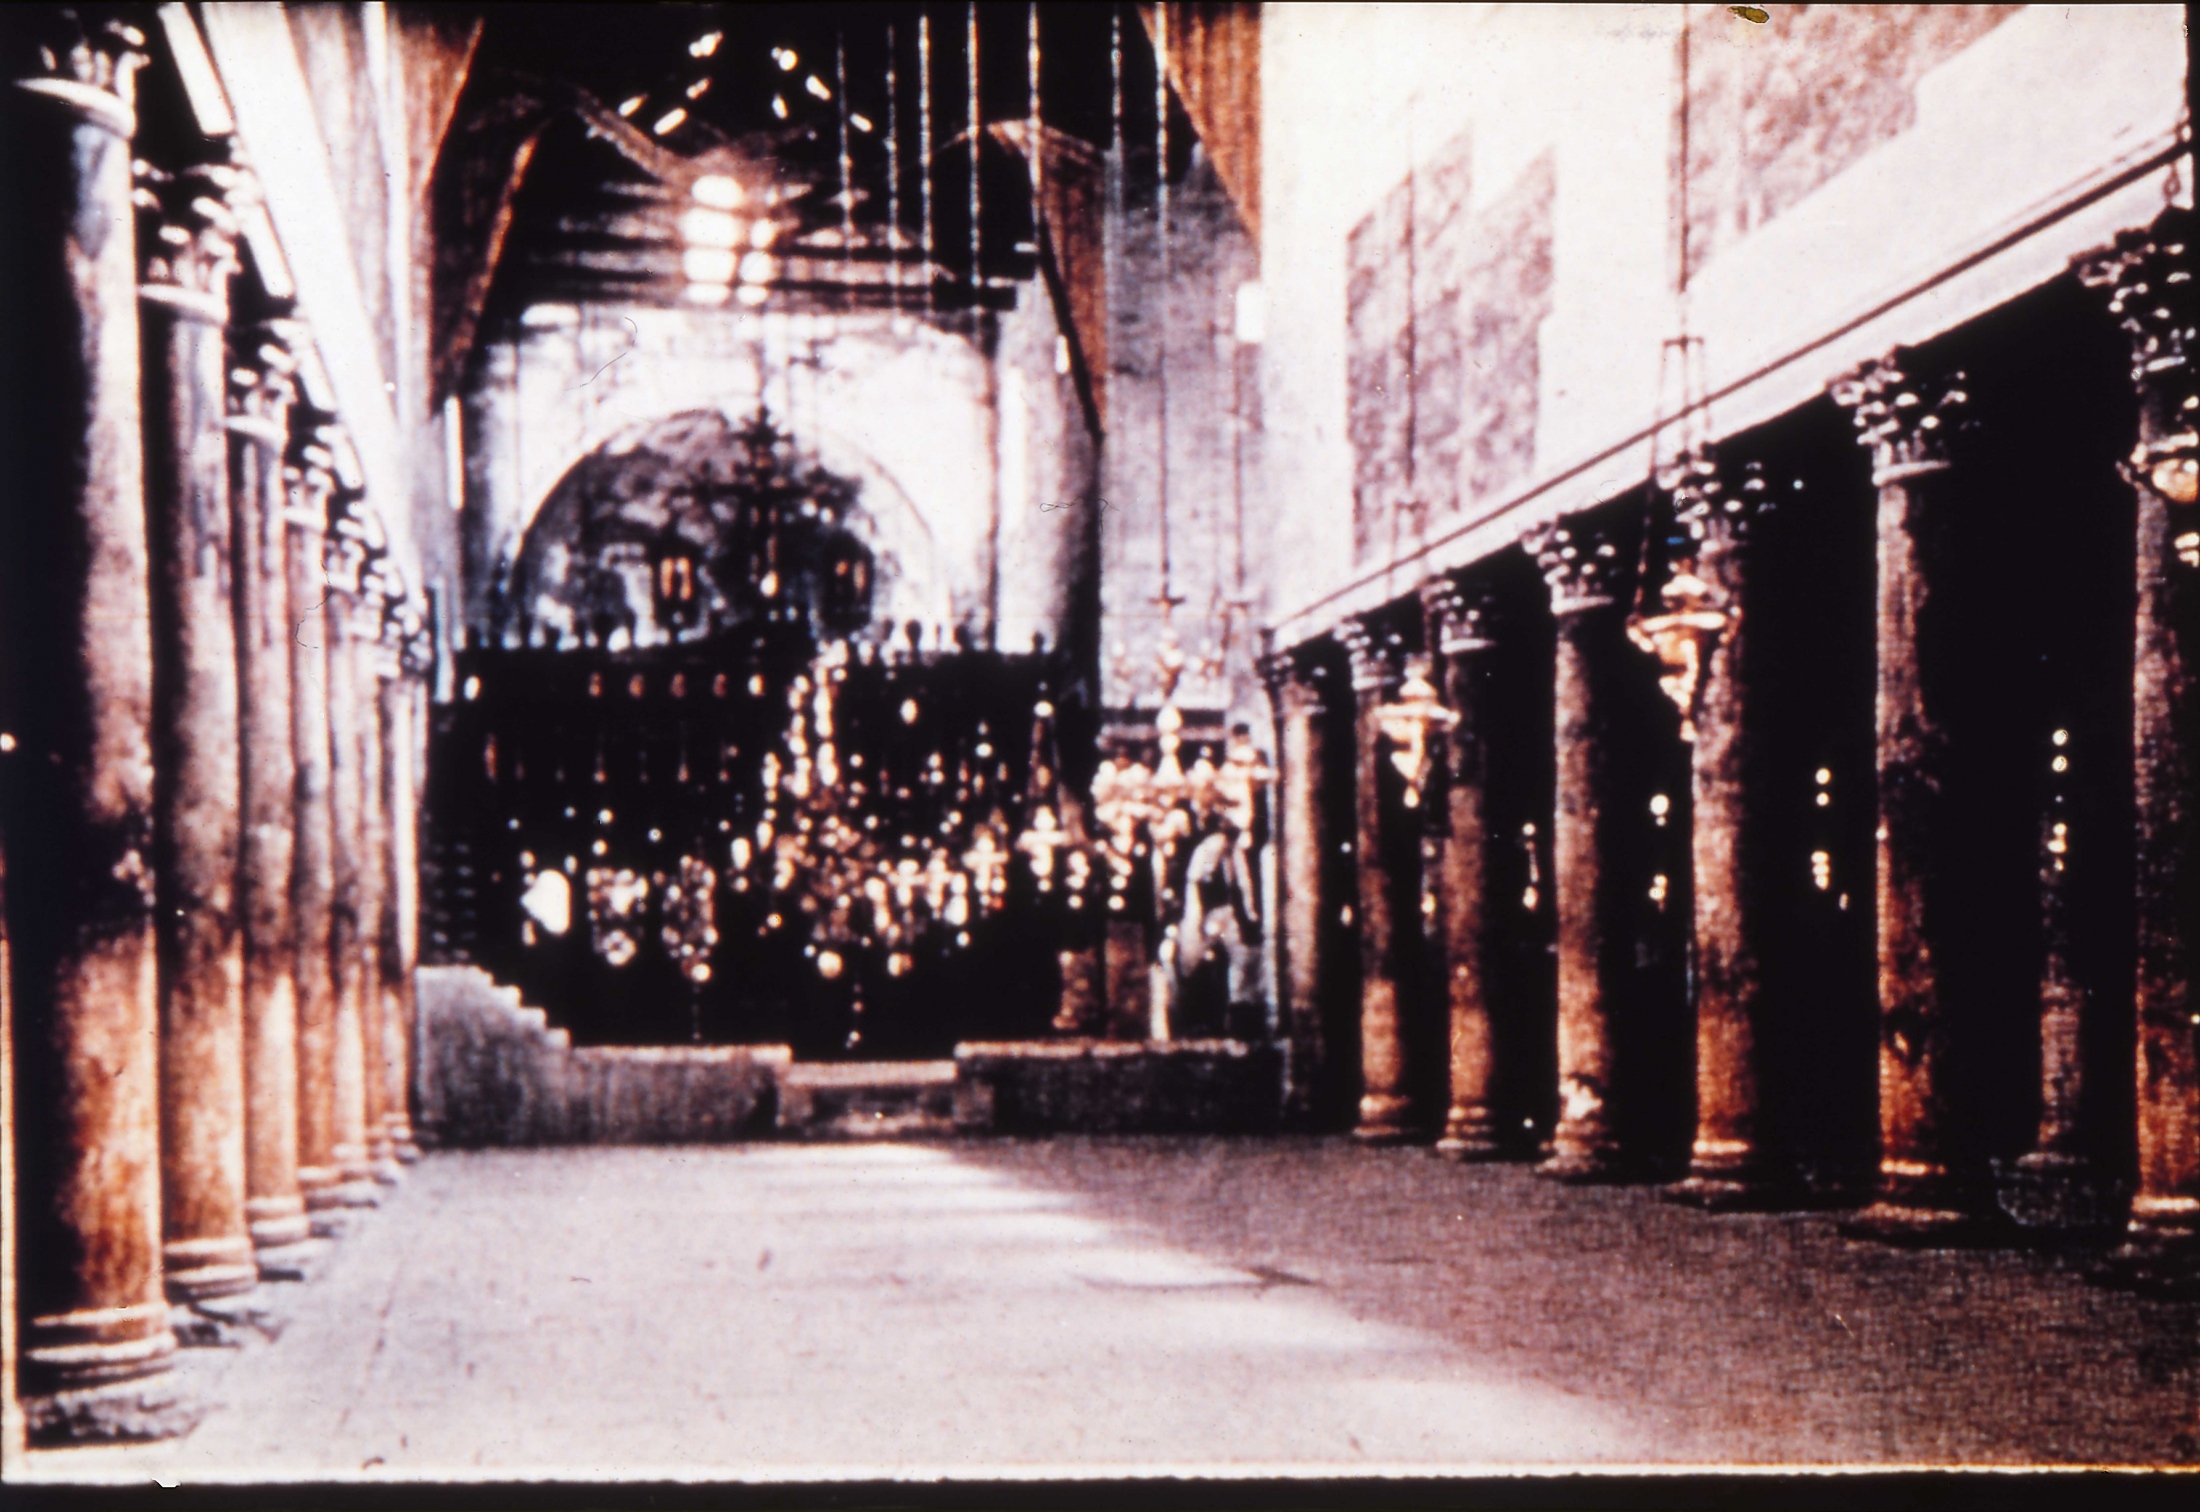 Church of Columns